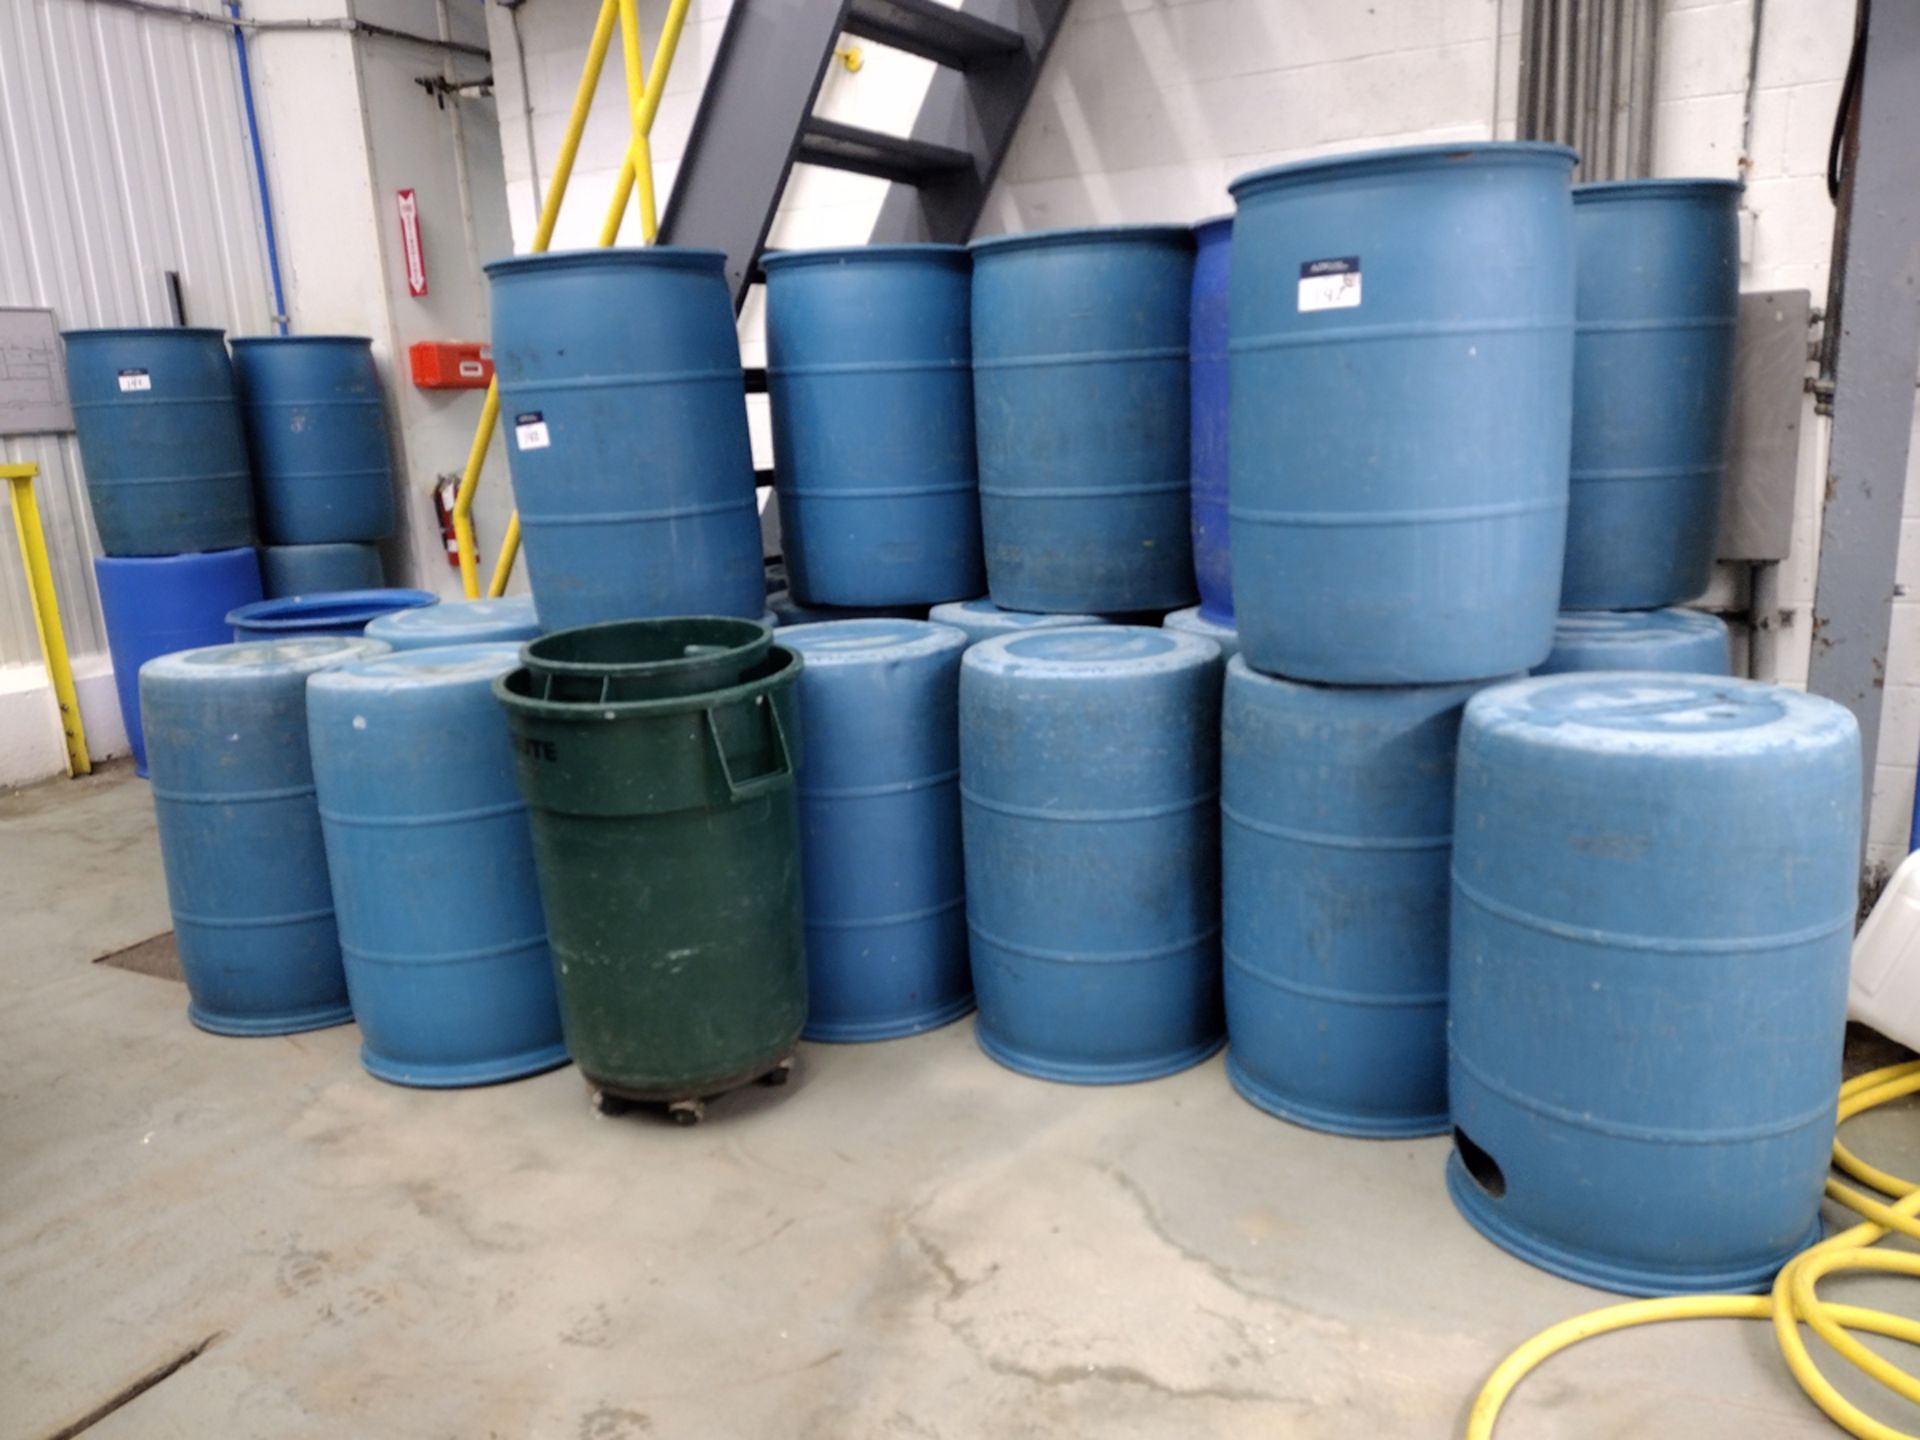 {Each} 55 Gallon Poly Storage Barrels